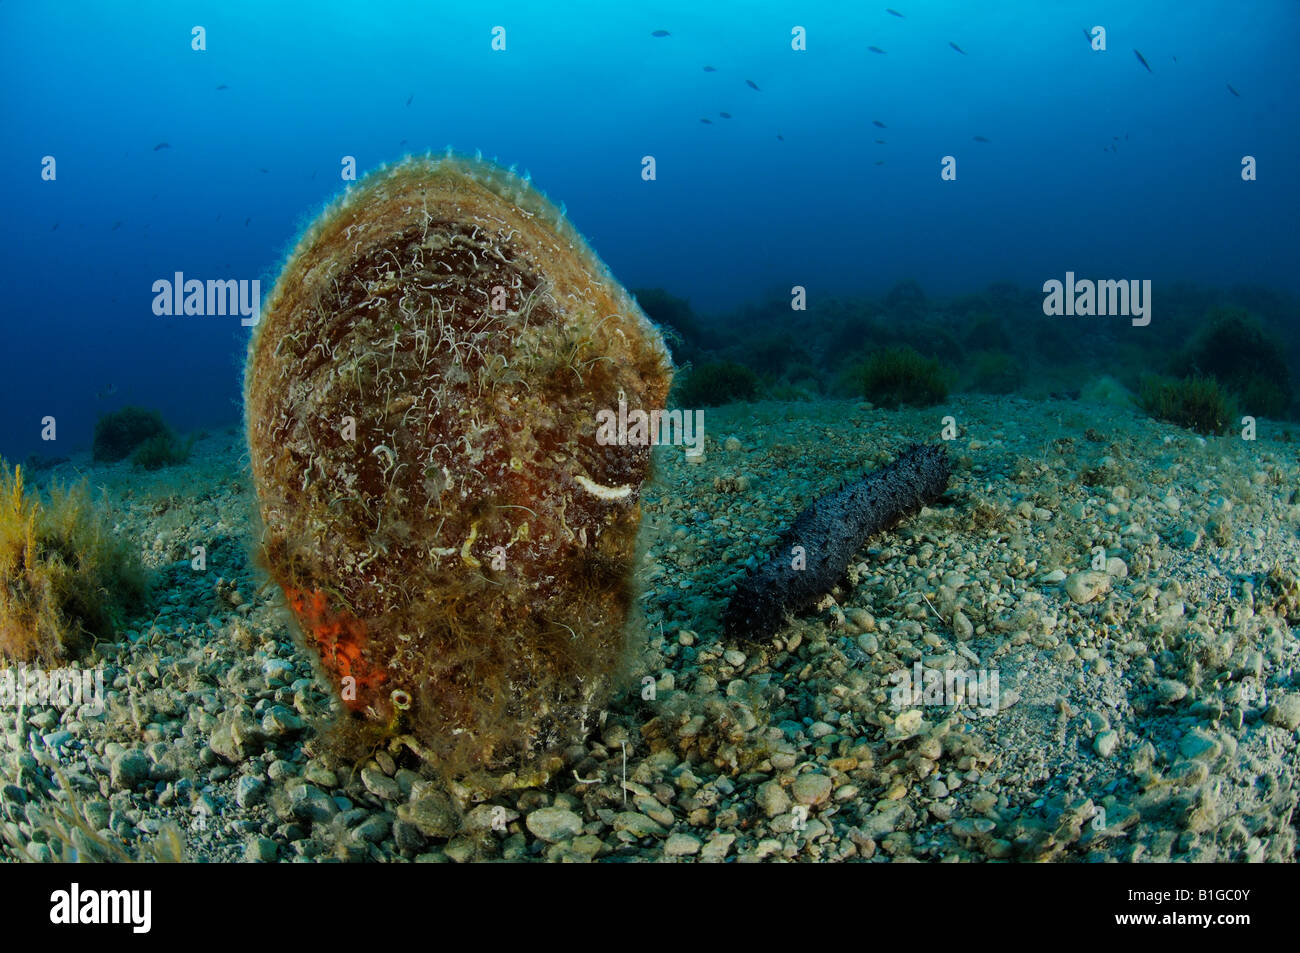 edle Steckmuschel auf dem Meeresboden, Pinna Nobilis, Kroatien Adria Mittelmeer Stockfoto